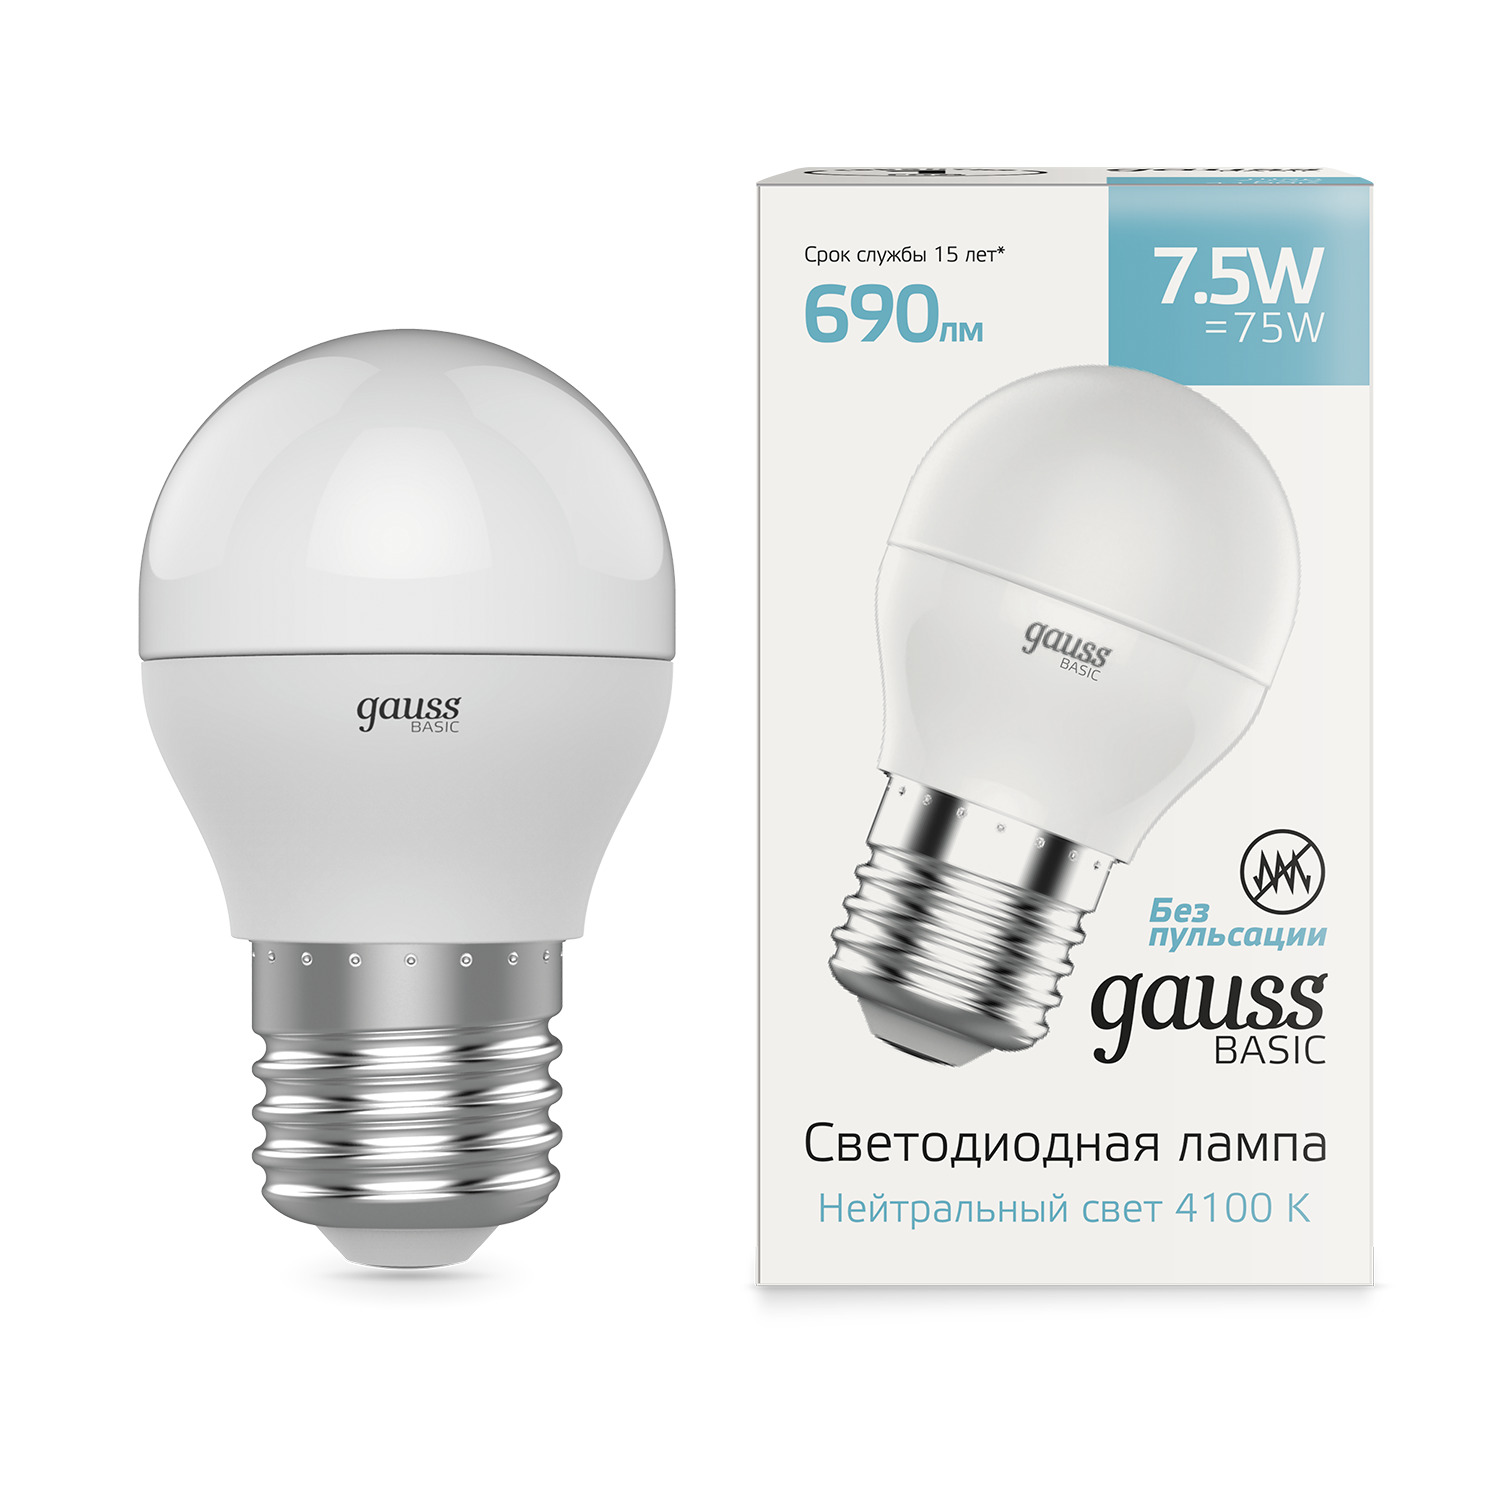 Лампа Gauss Basic Шар 7,5W 690lm 4100K E27 LED, 10 шт д в брызгалов особенности понятия конкуренции при различных подходах к определению страхования и страхового рынка